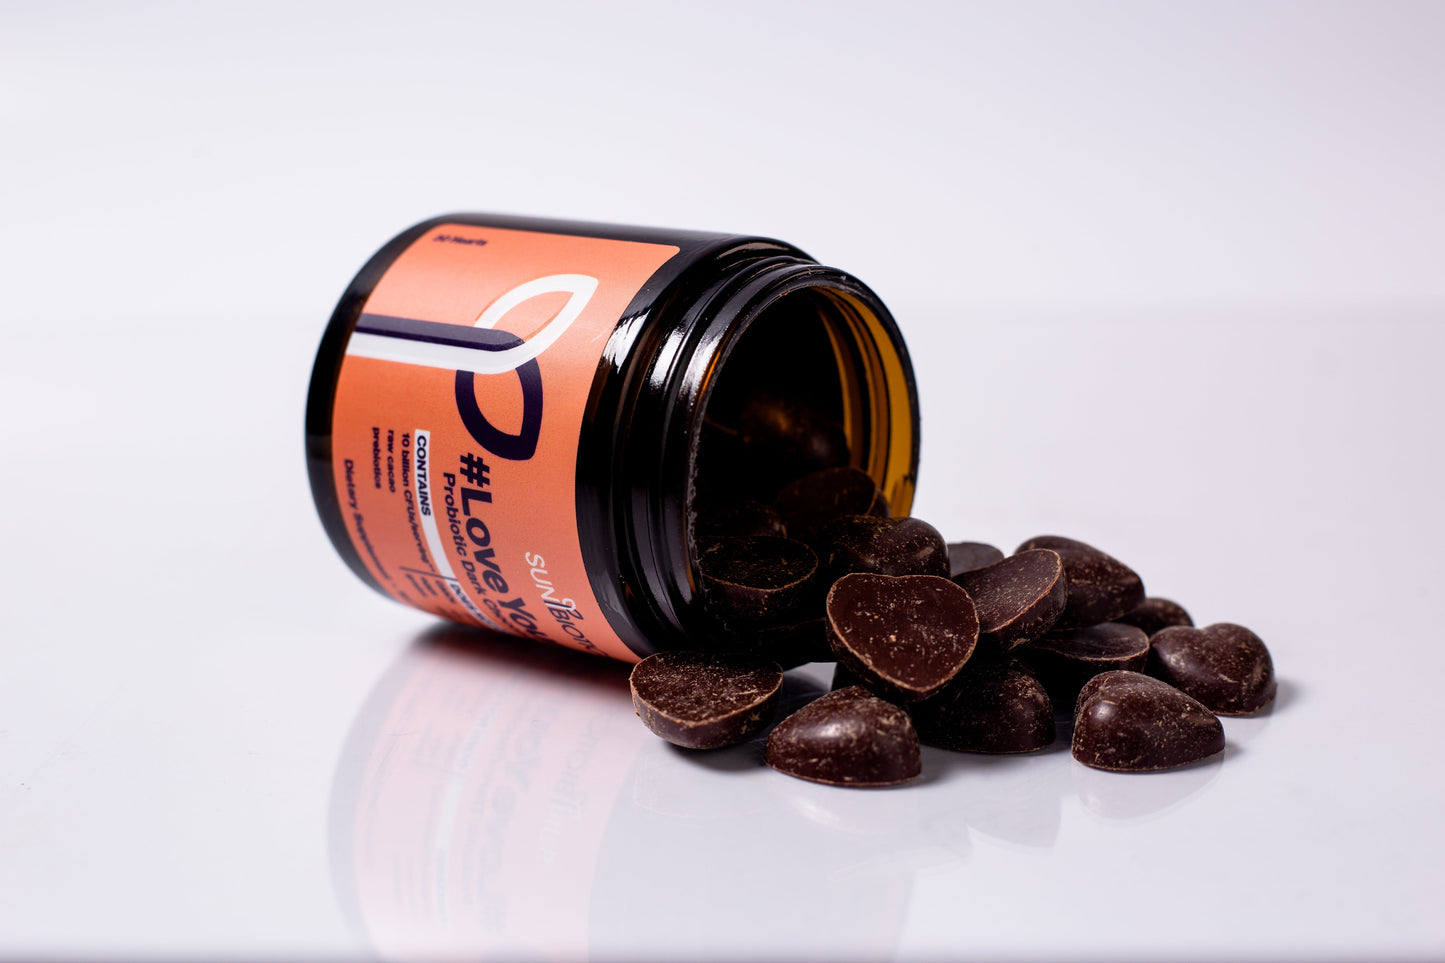  Probiotic Dark Chocolate Hearts - 70% cacao open box